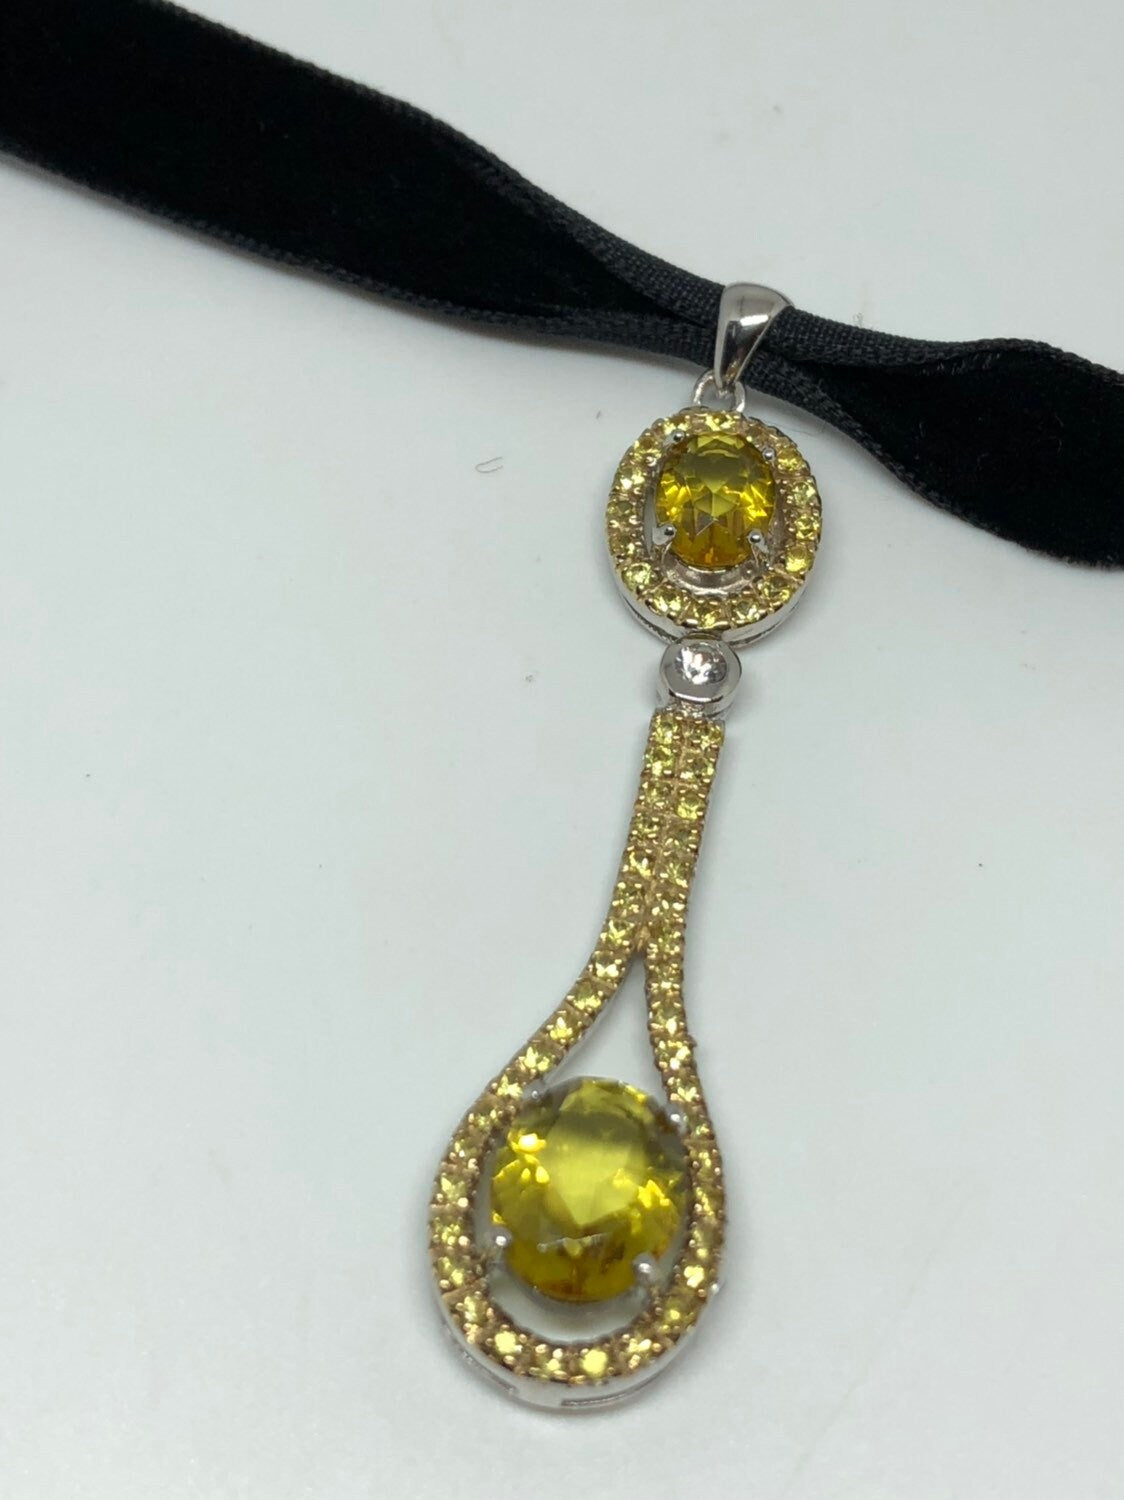 Vintage Handmade Sterling Silver Golden Lemon Citrine Pendant